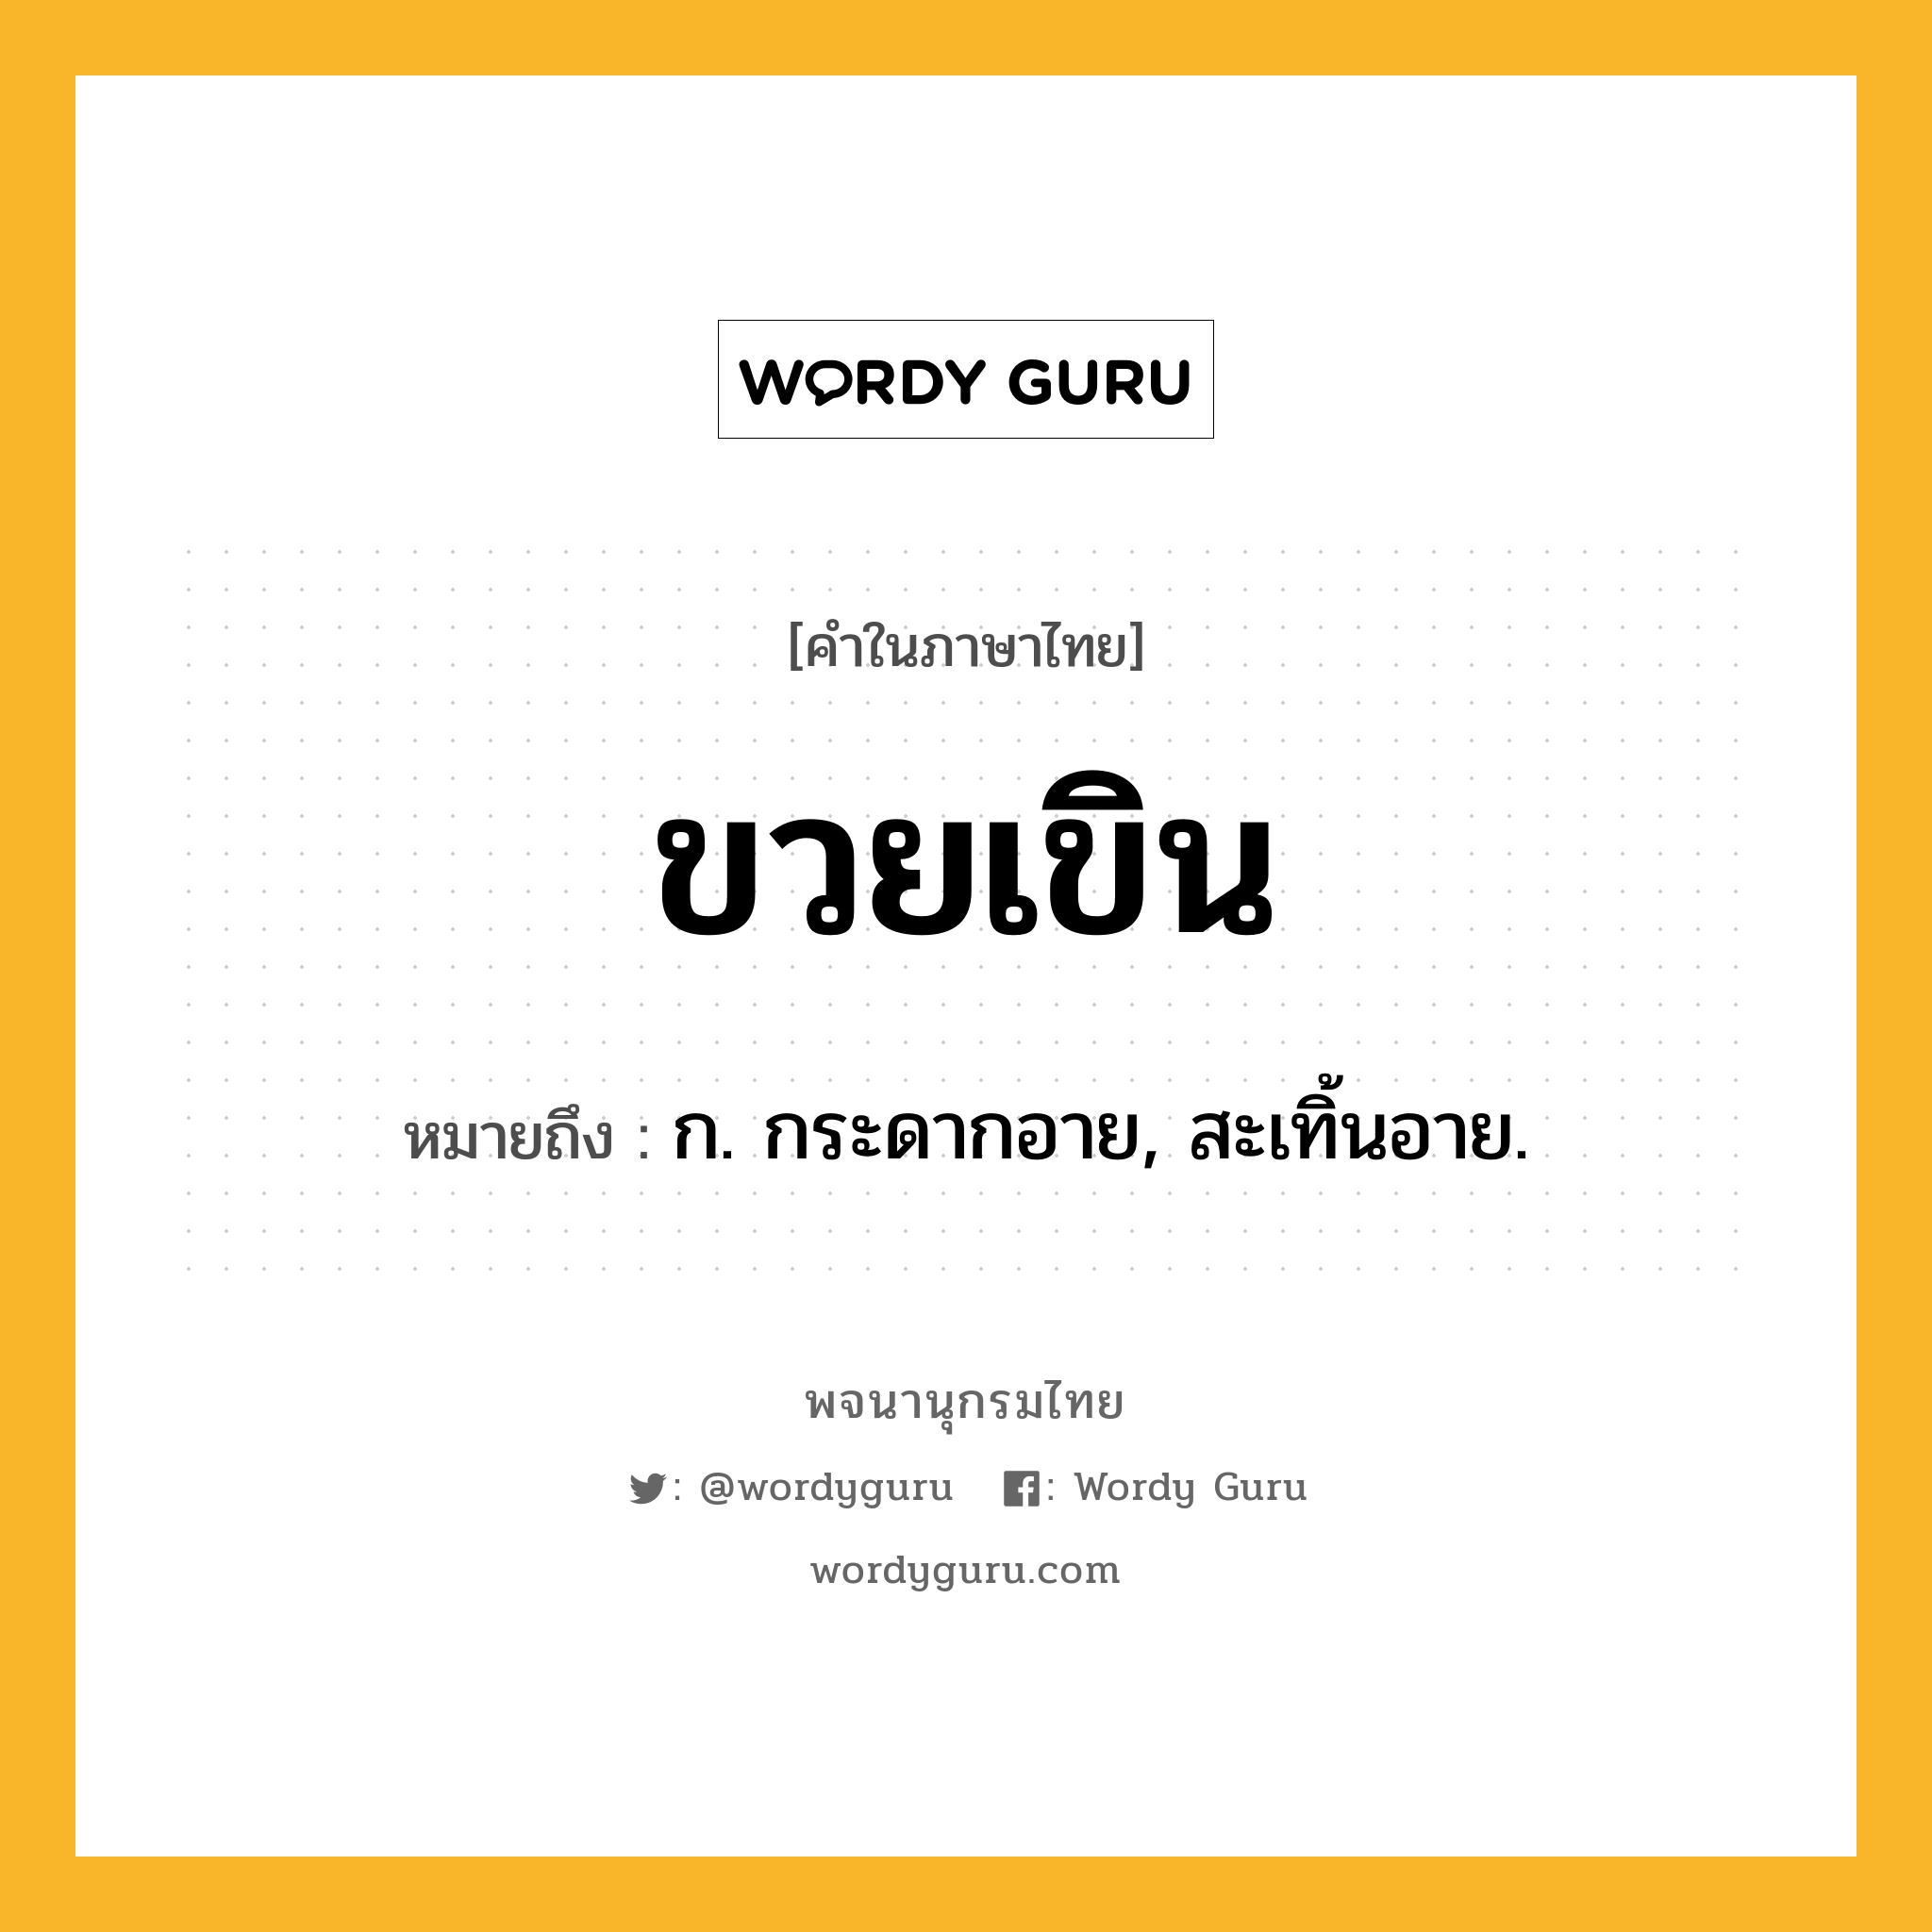 ขวยเขิน หมายถึงอะไร?, คำในภาษาไทย ขวยเขิน หมายถึง ก. กระดากอาย, สะเทิ้นอาย.